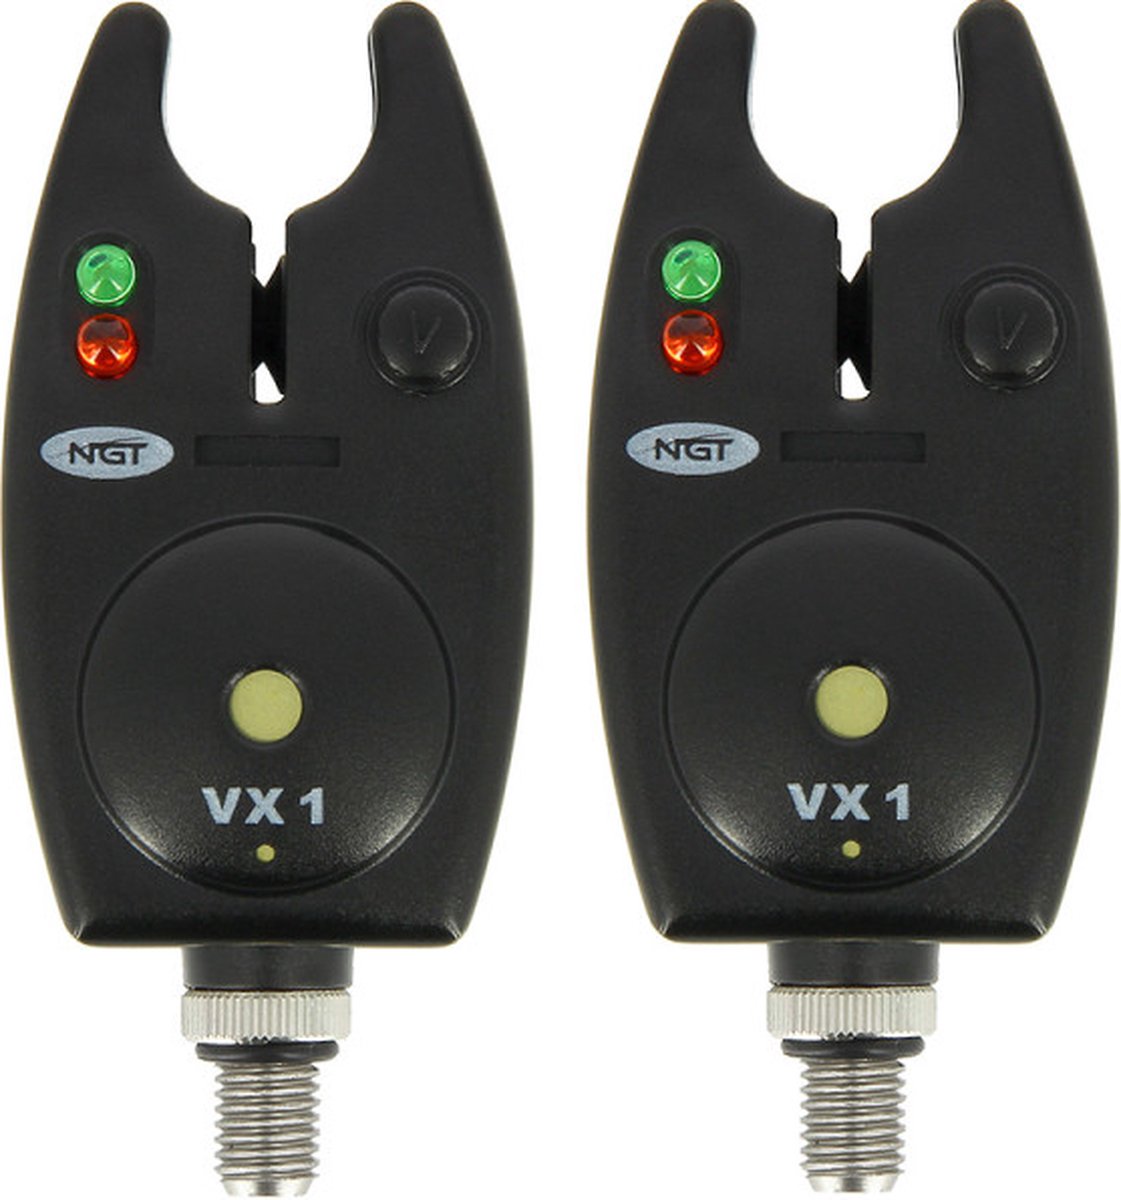 NGT ‘Session’ Rod Pod + 3 x NGT VX-1 Bite Alarm With Volume Control + NGT 5 x 12v batterijen | Rodpod - NGT